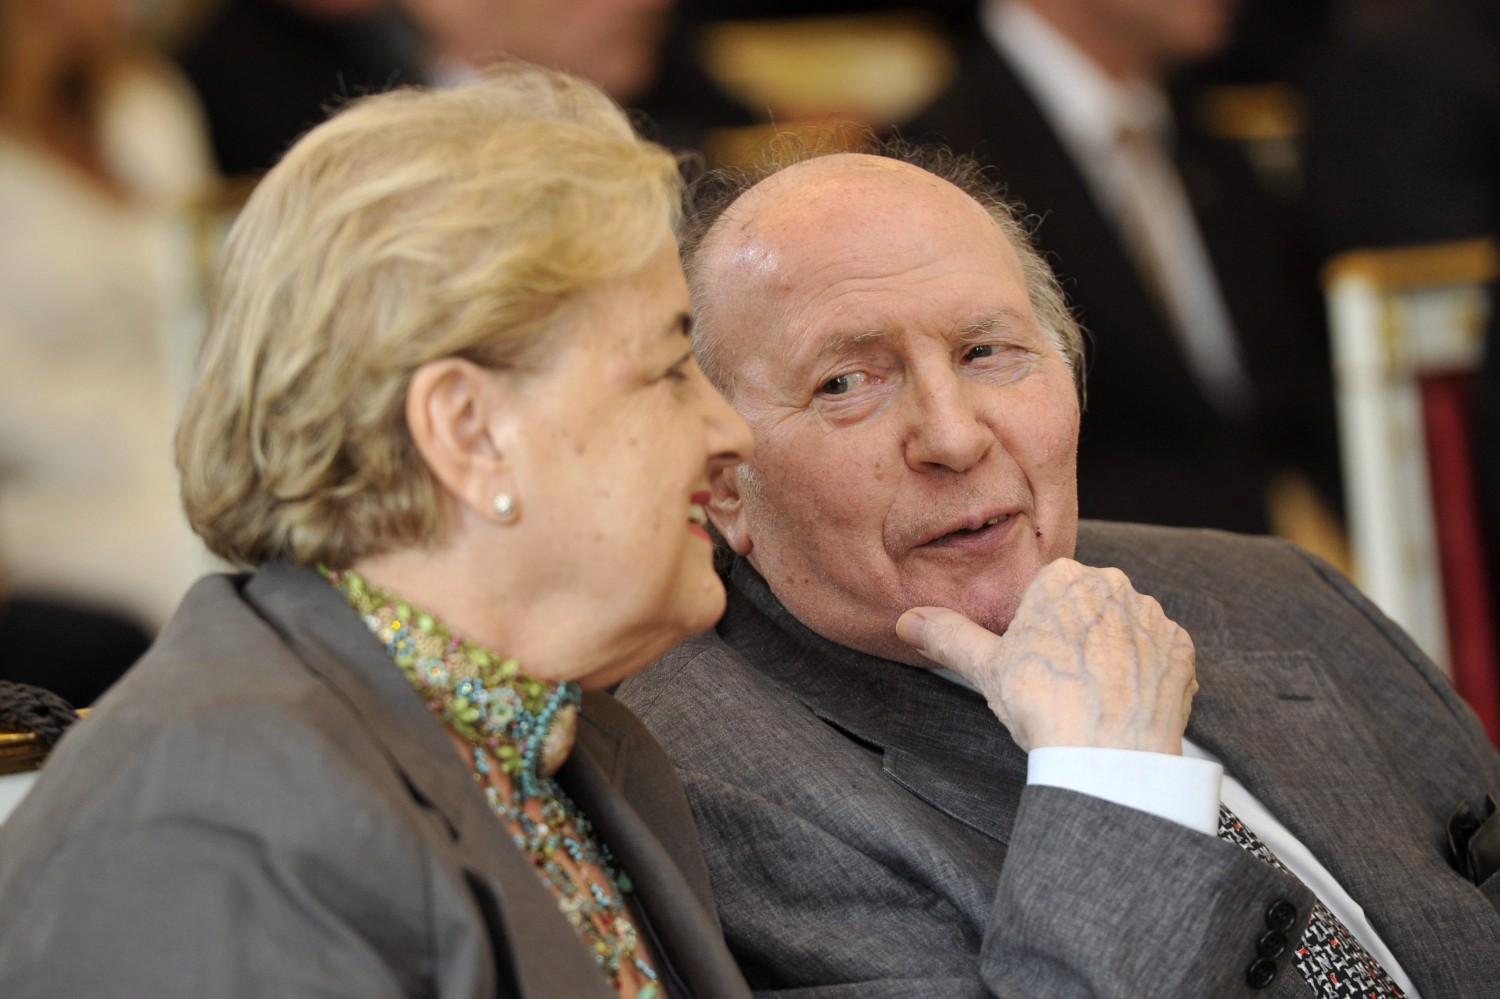 Kertész Imre cùng vợ, bà Kertész Magda trong lễ nhận phần thưởng cao quý nhất của Nhà nước Hungary tại Dinh Tổng thống (Cung Sándor), Budapest ngày 20-8-2014 - Ảnh: Kovács Attila (MTI)